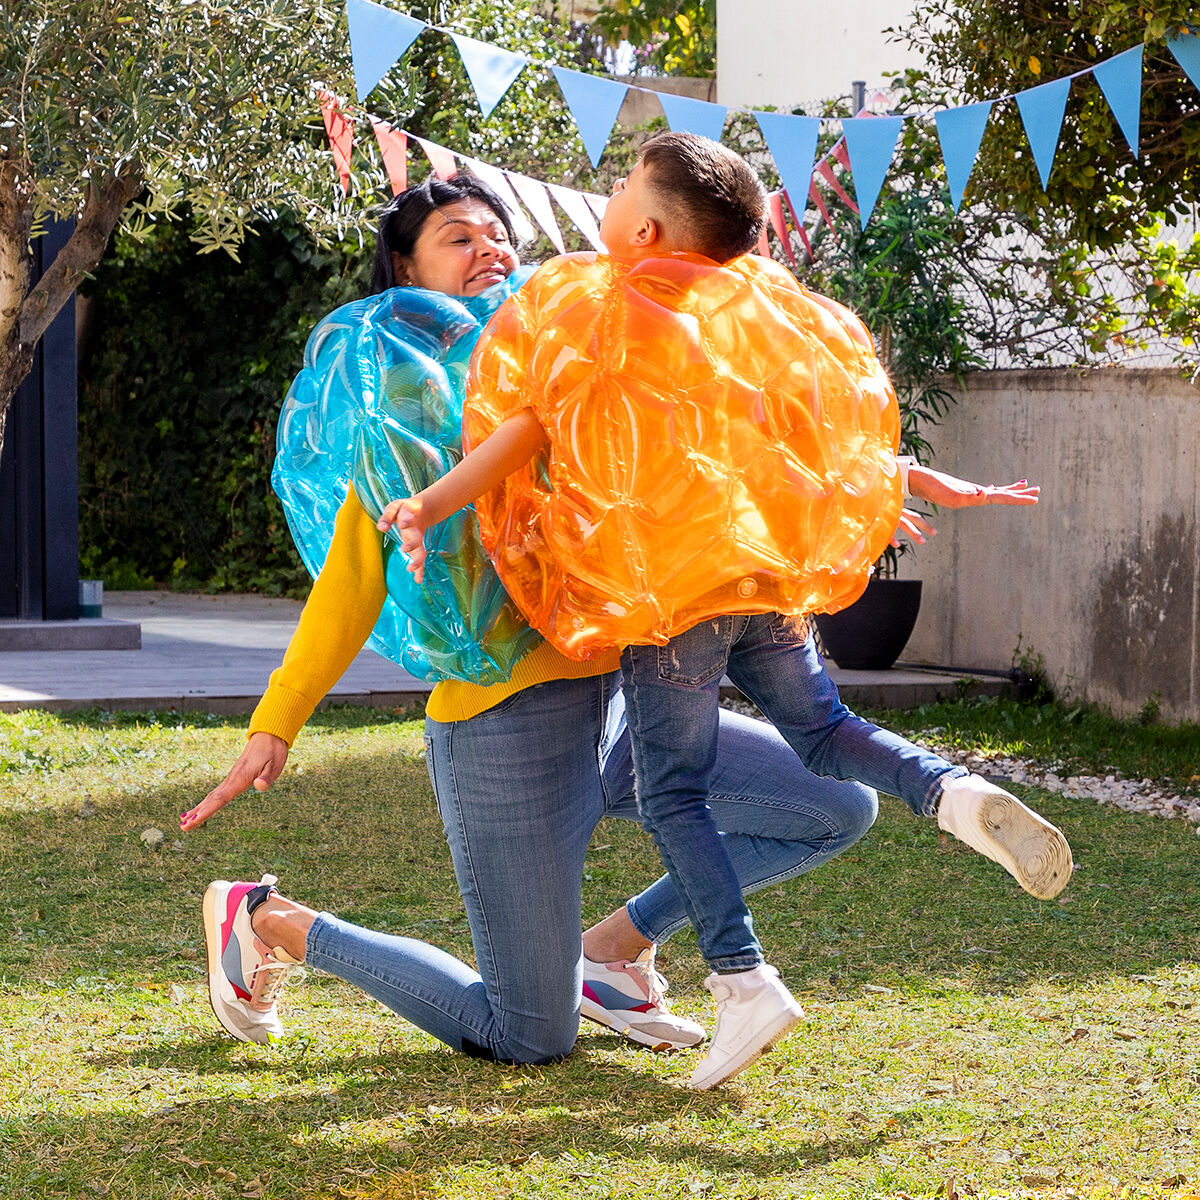 Ballon gonflable géant Rebond Fun Indoor Outdoor Garden Toy Gift pour les  enfants